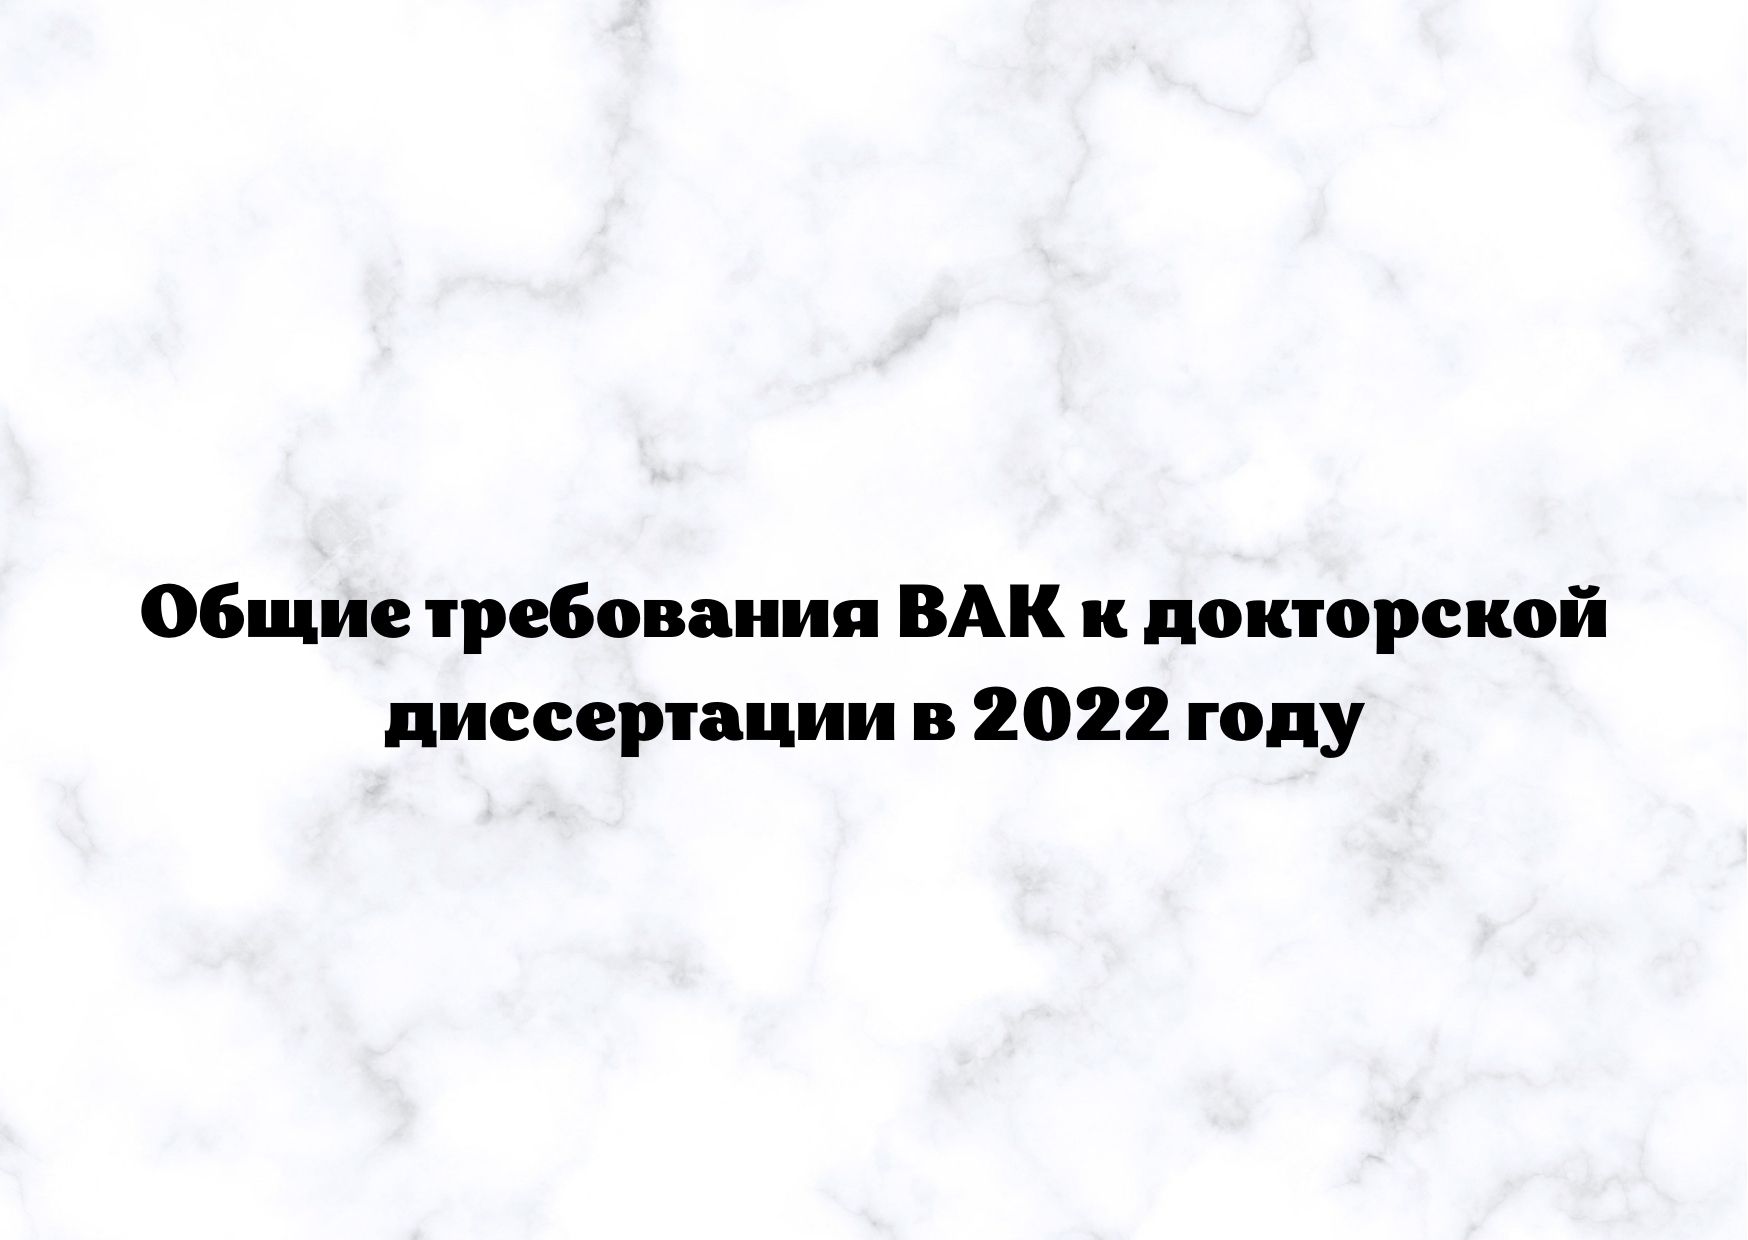 Авторефераты Диссертаций На Сайте Вак 2022